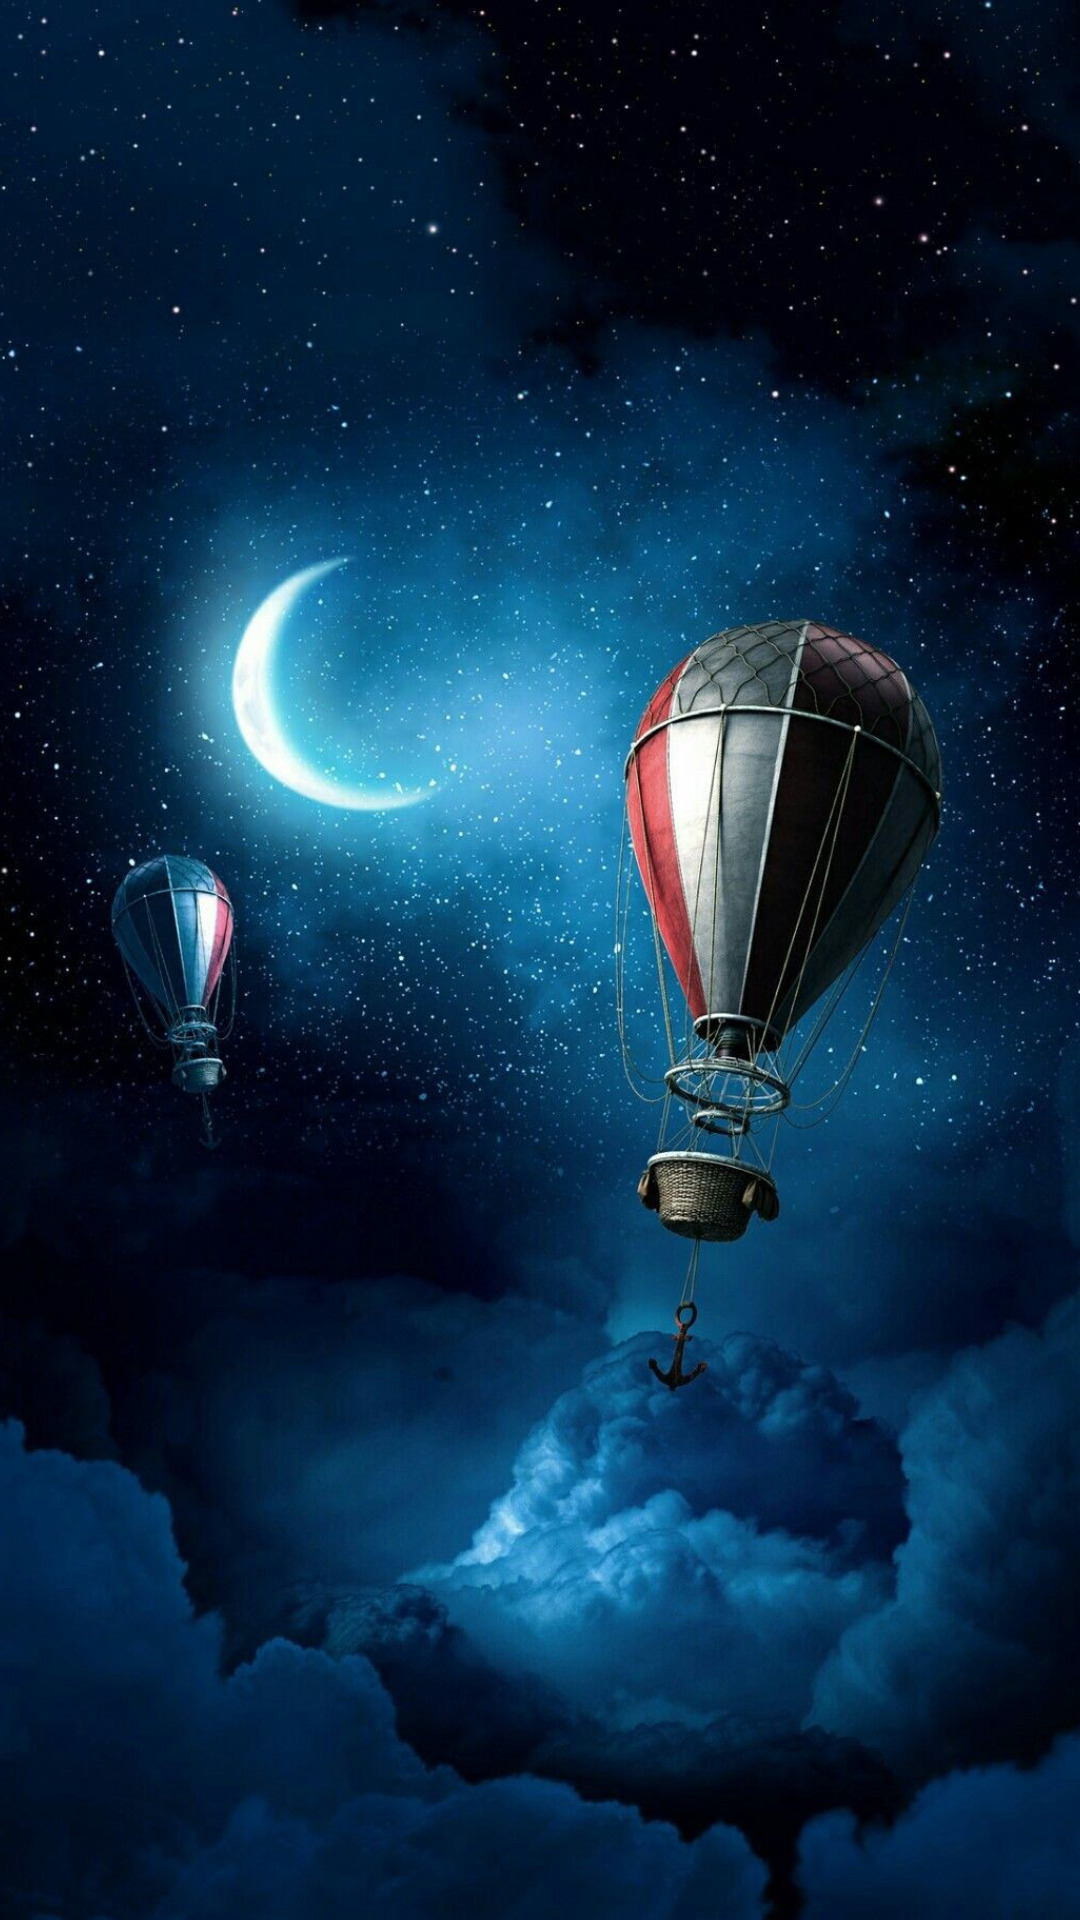 tapete whatsapp tumblr,himmel,heißluftballon,licht,atmosphäre,fahrzeug